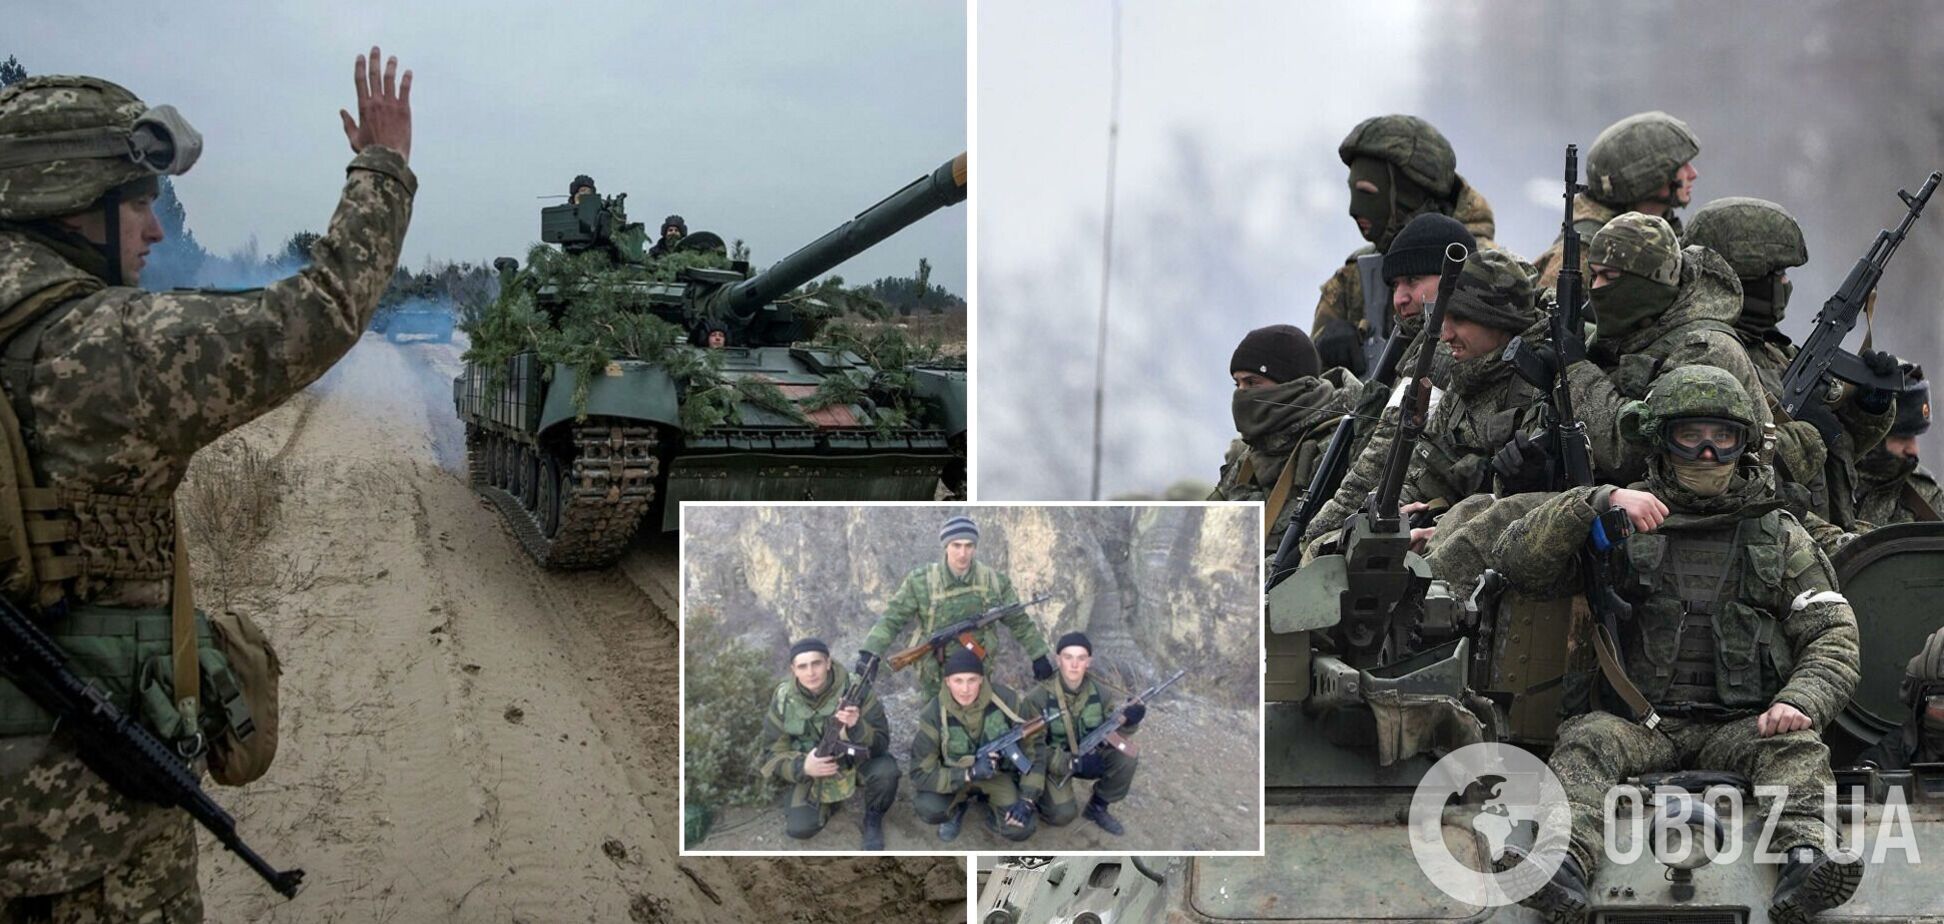 Разведка обнародовала имена солдат артиллерийского полка РФ, которые совершают военные преступления в Украине